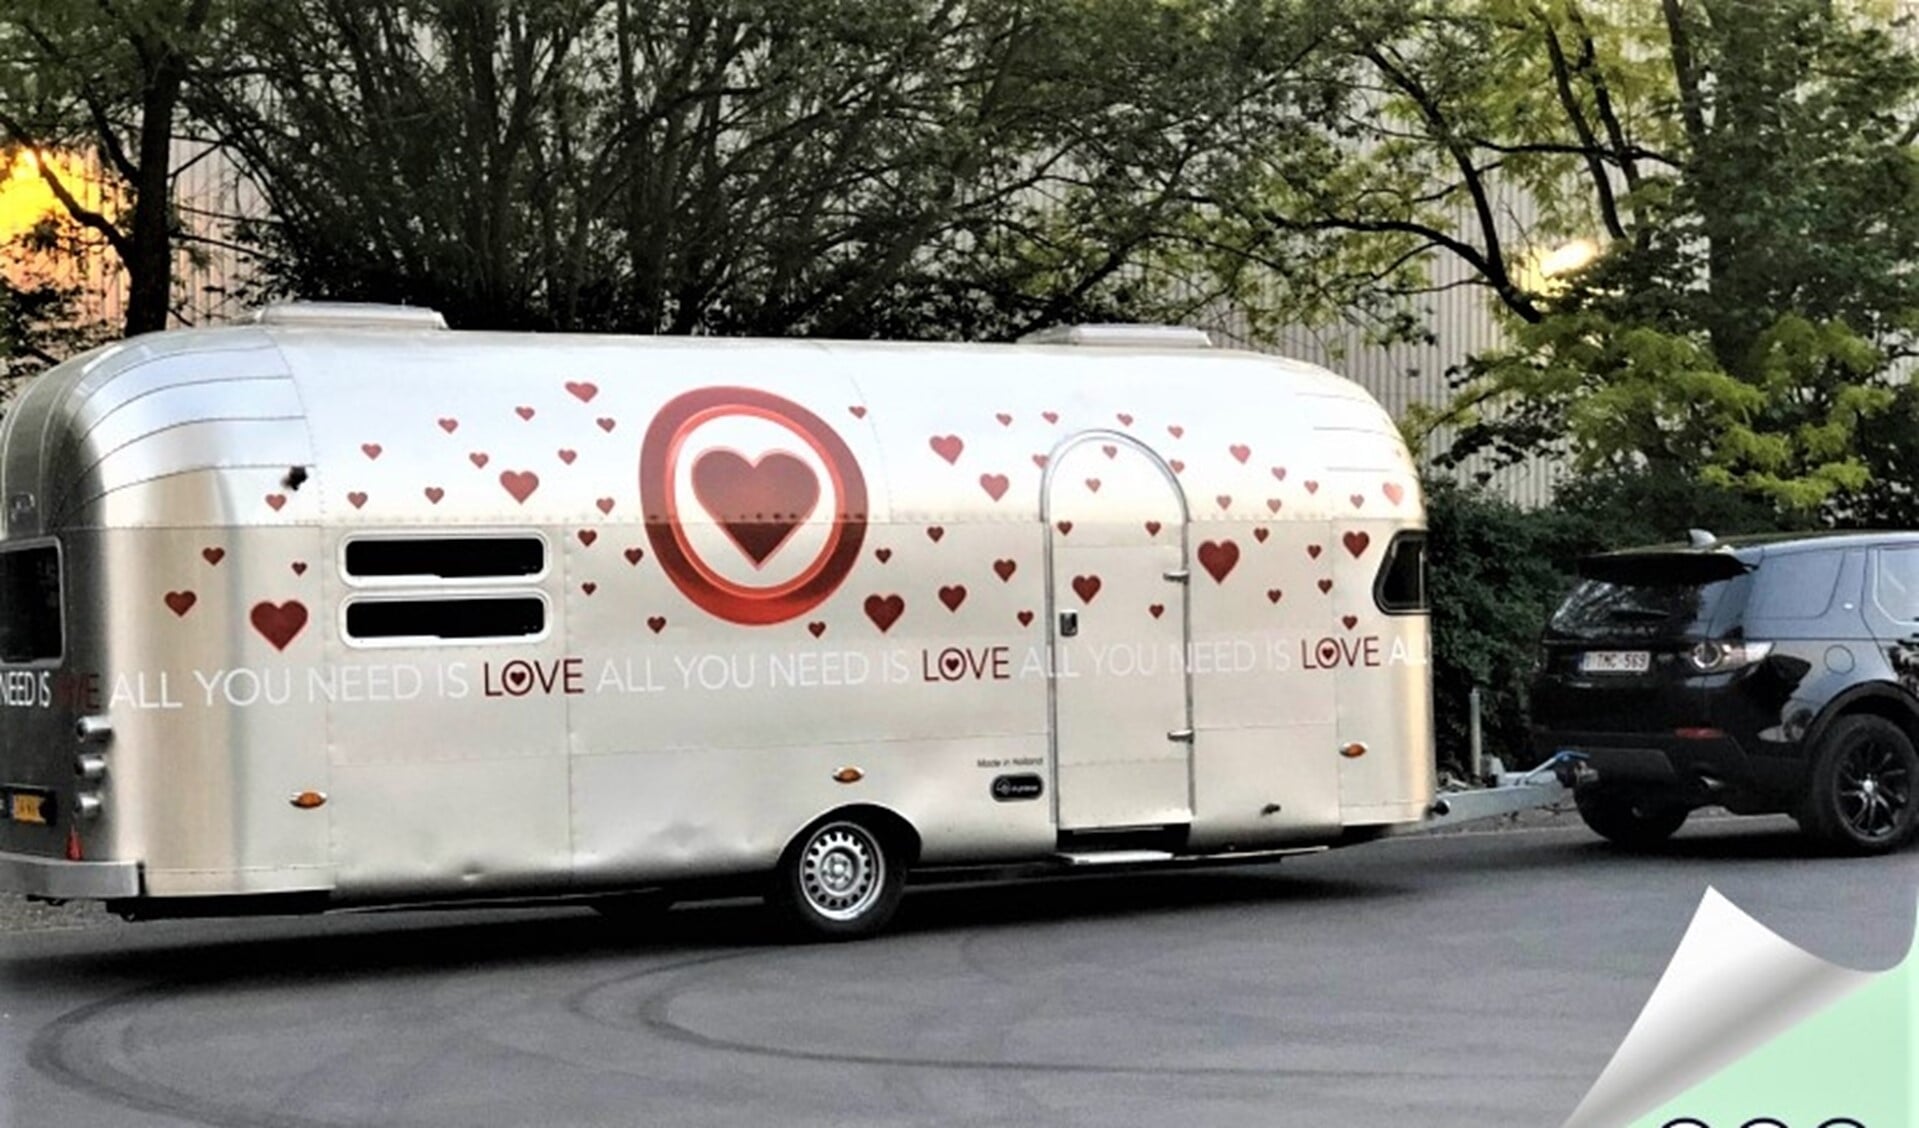 De All You Need Is Love-caravan (foto: Oog voor elkaar).